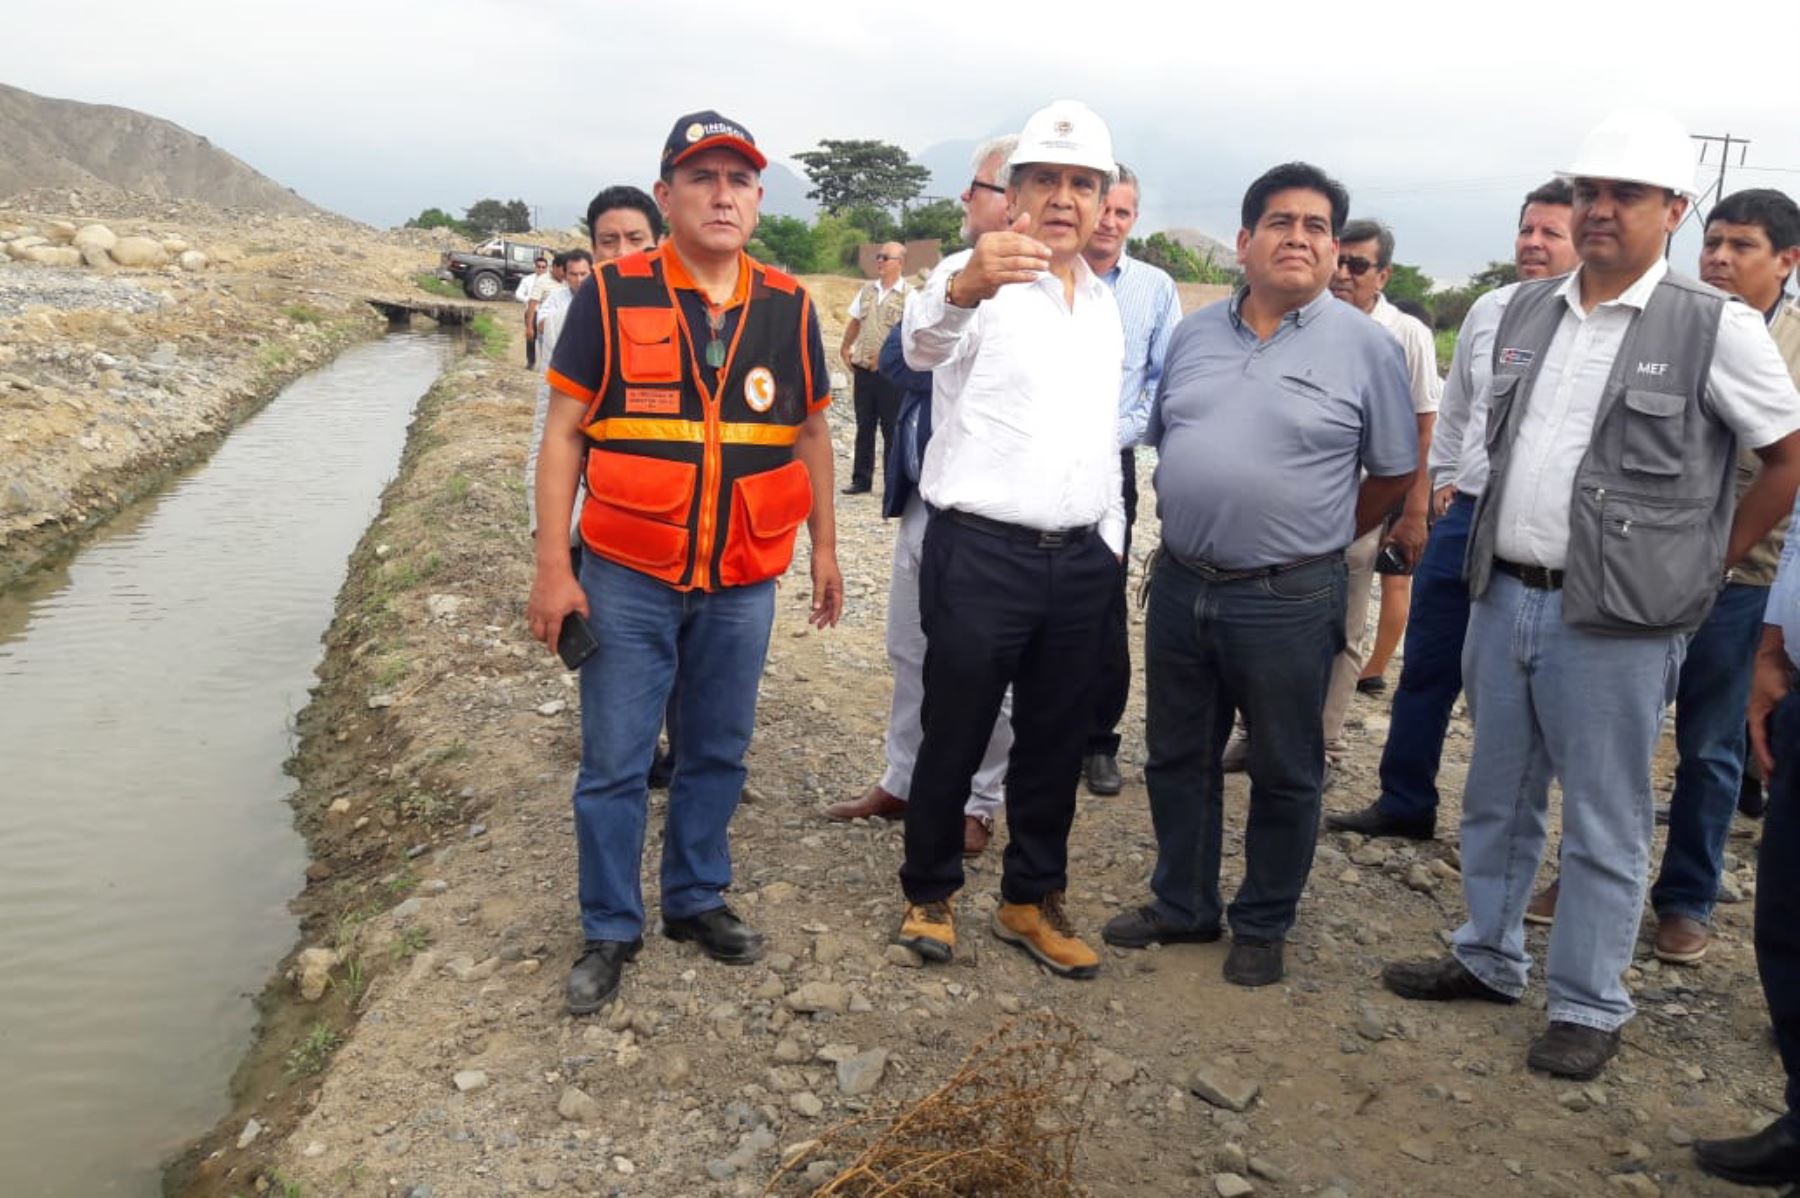 El ministro de Economía y Finanzas, Carlos Oliva, recorrió la quebrada San Carlos, ubicada en la provincia de Trujillo. Foto: ANDINA/Luis Puell